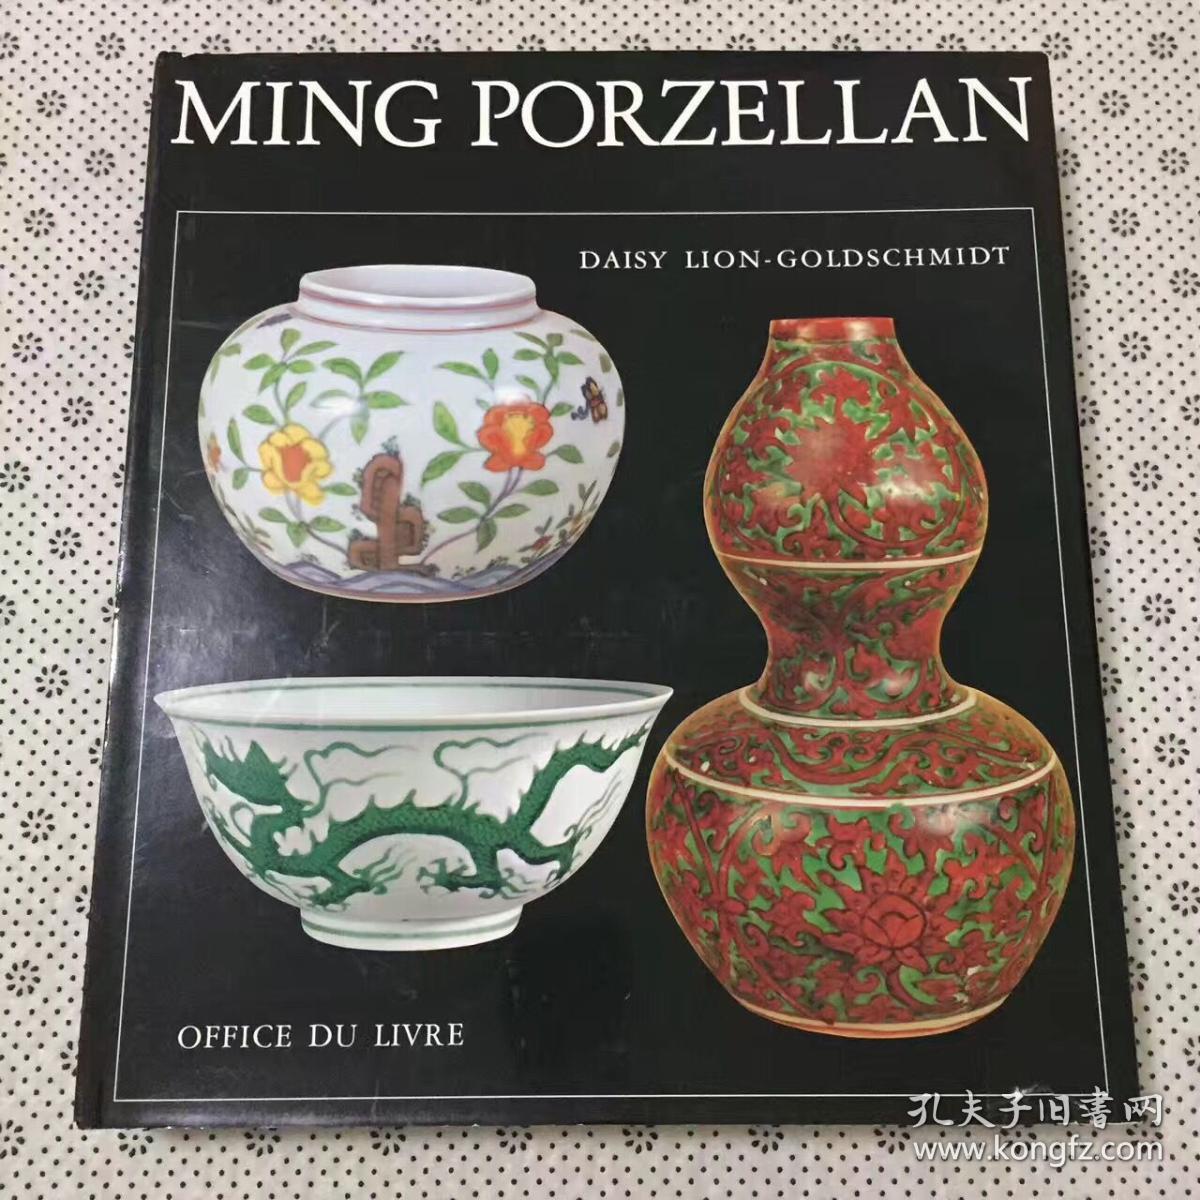 1978年出版大开本大量彩色黑白整面插图本MING PORZELLAN《明代瓷器》  DAISY LION GOLDSCHMIDT